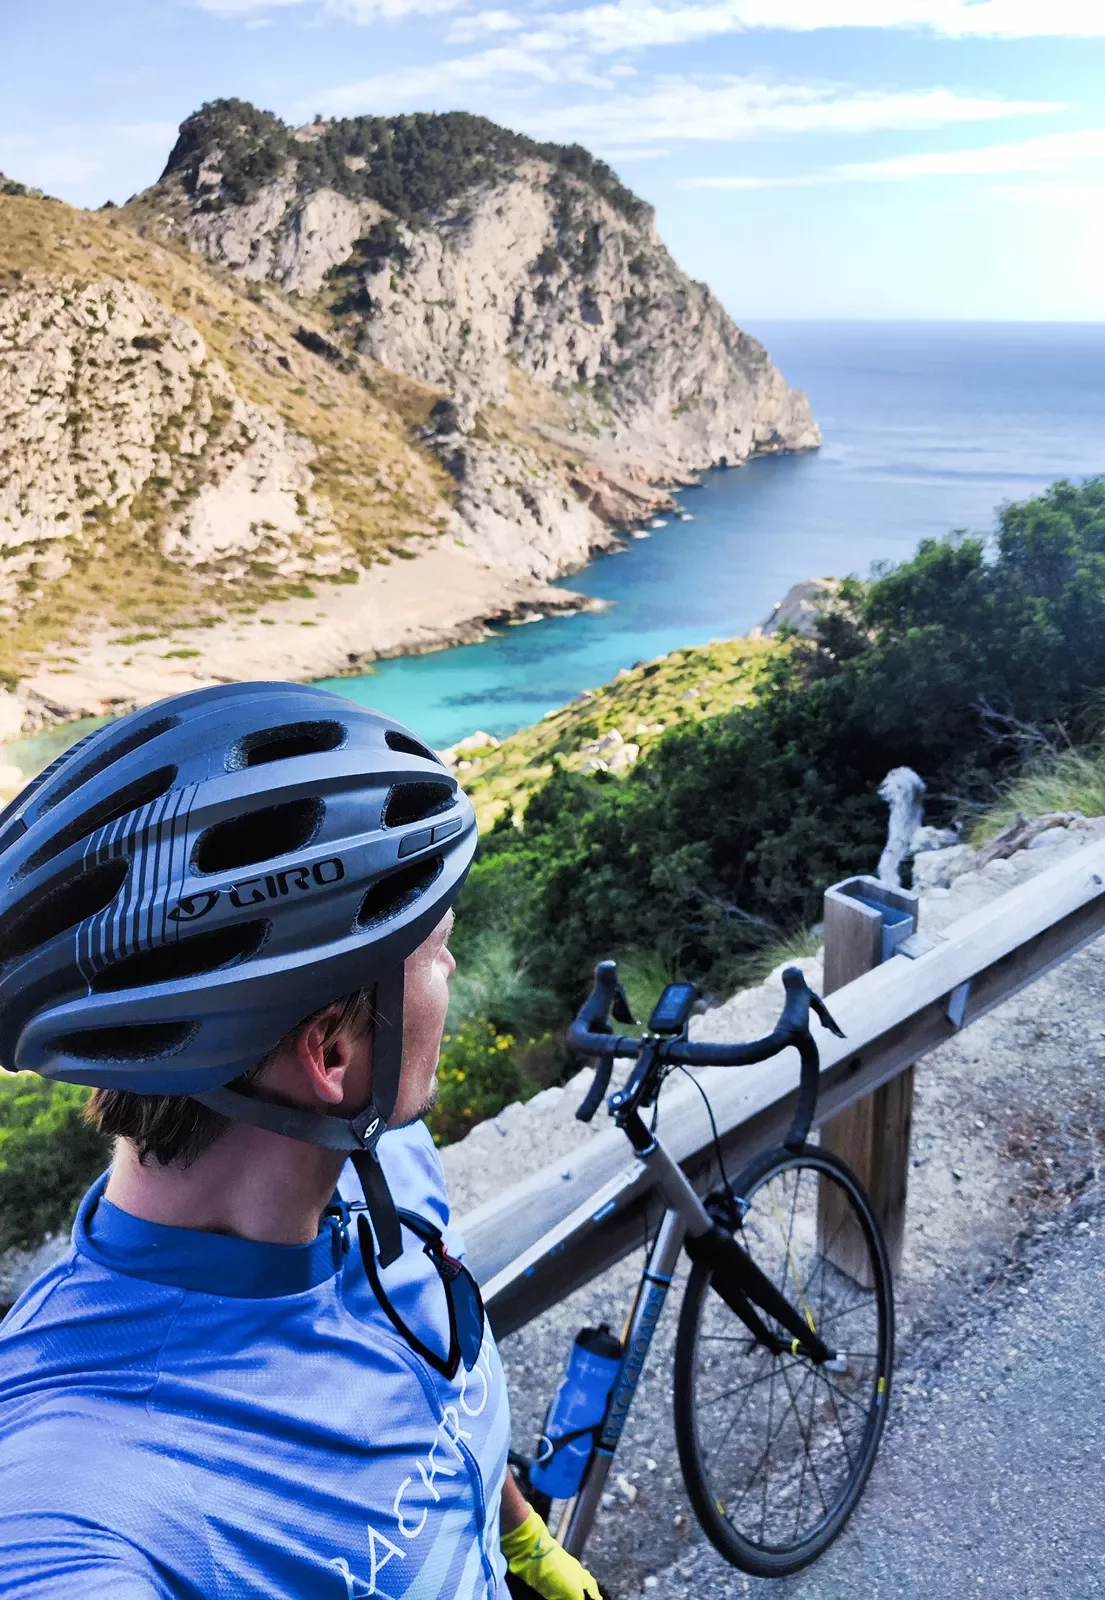 Biker taking selfie along the coast in Mallorca.